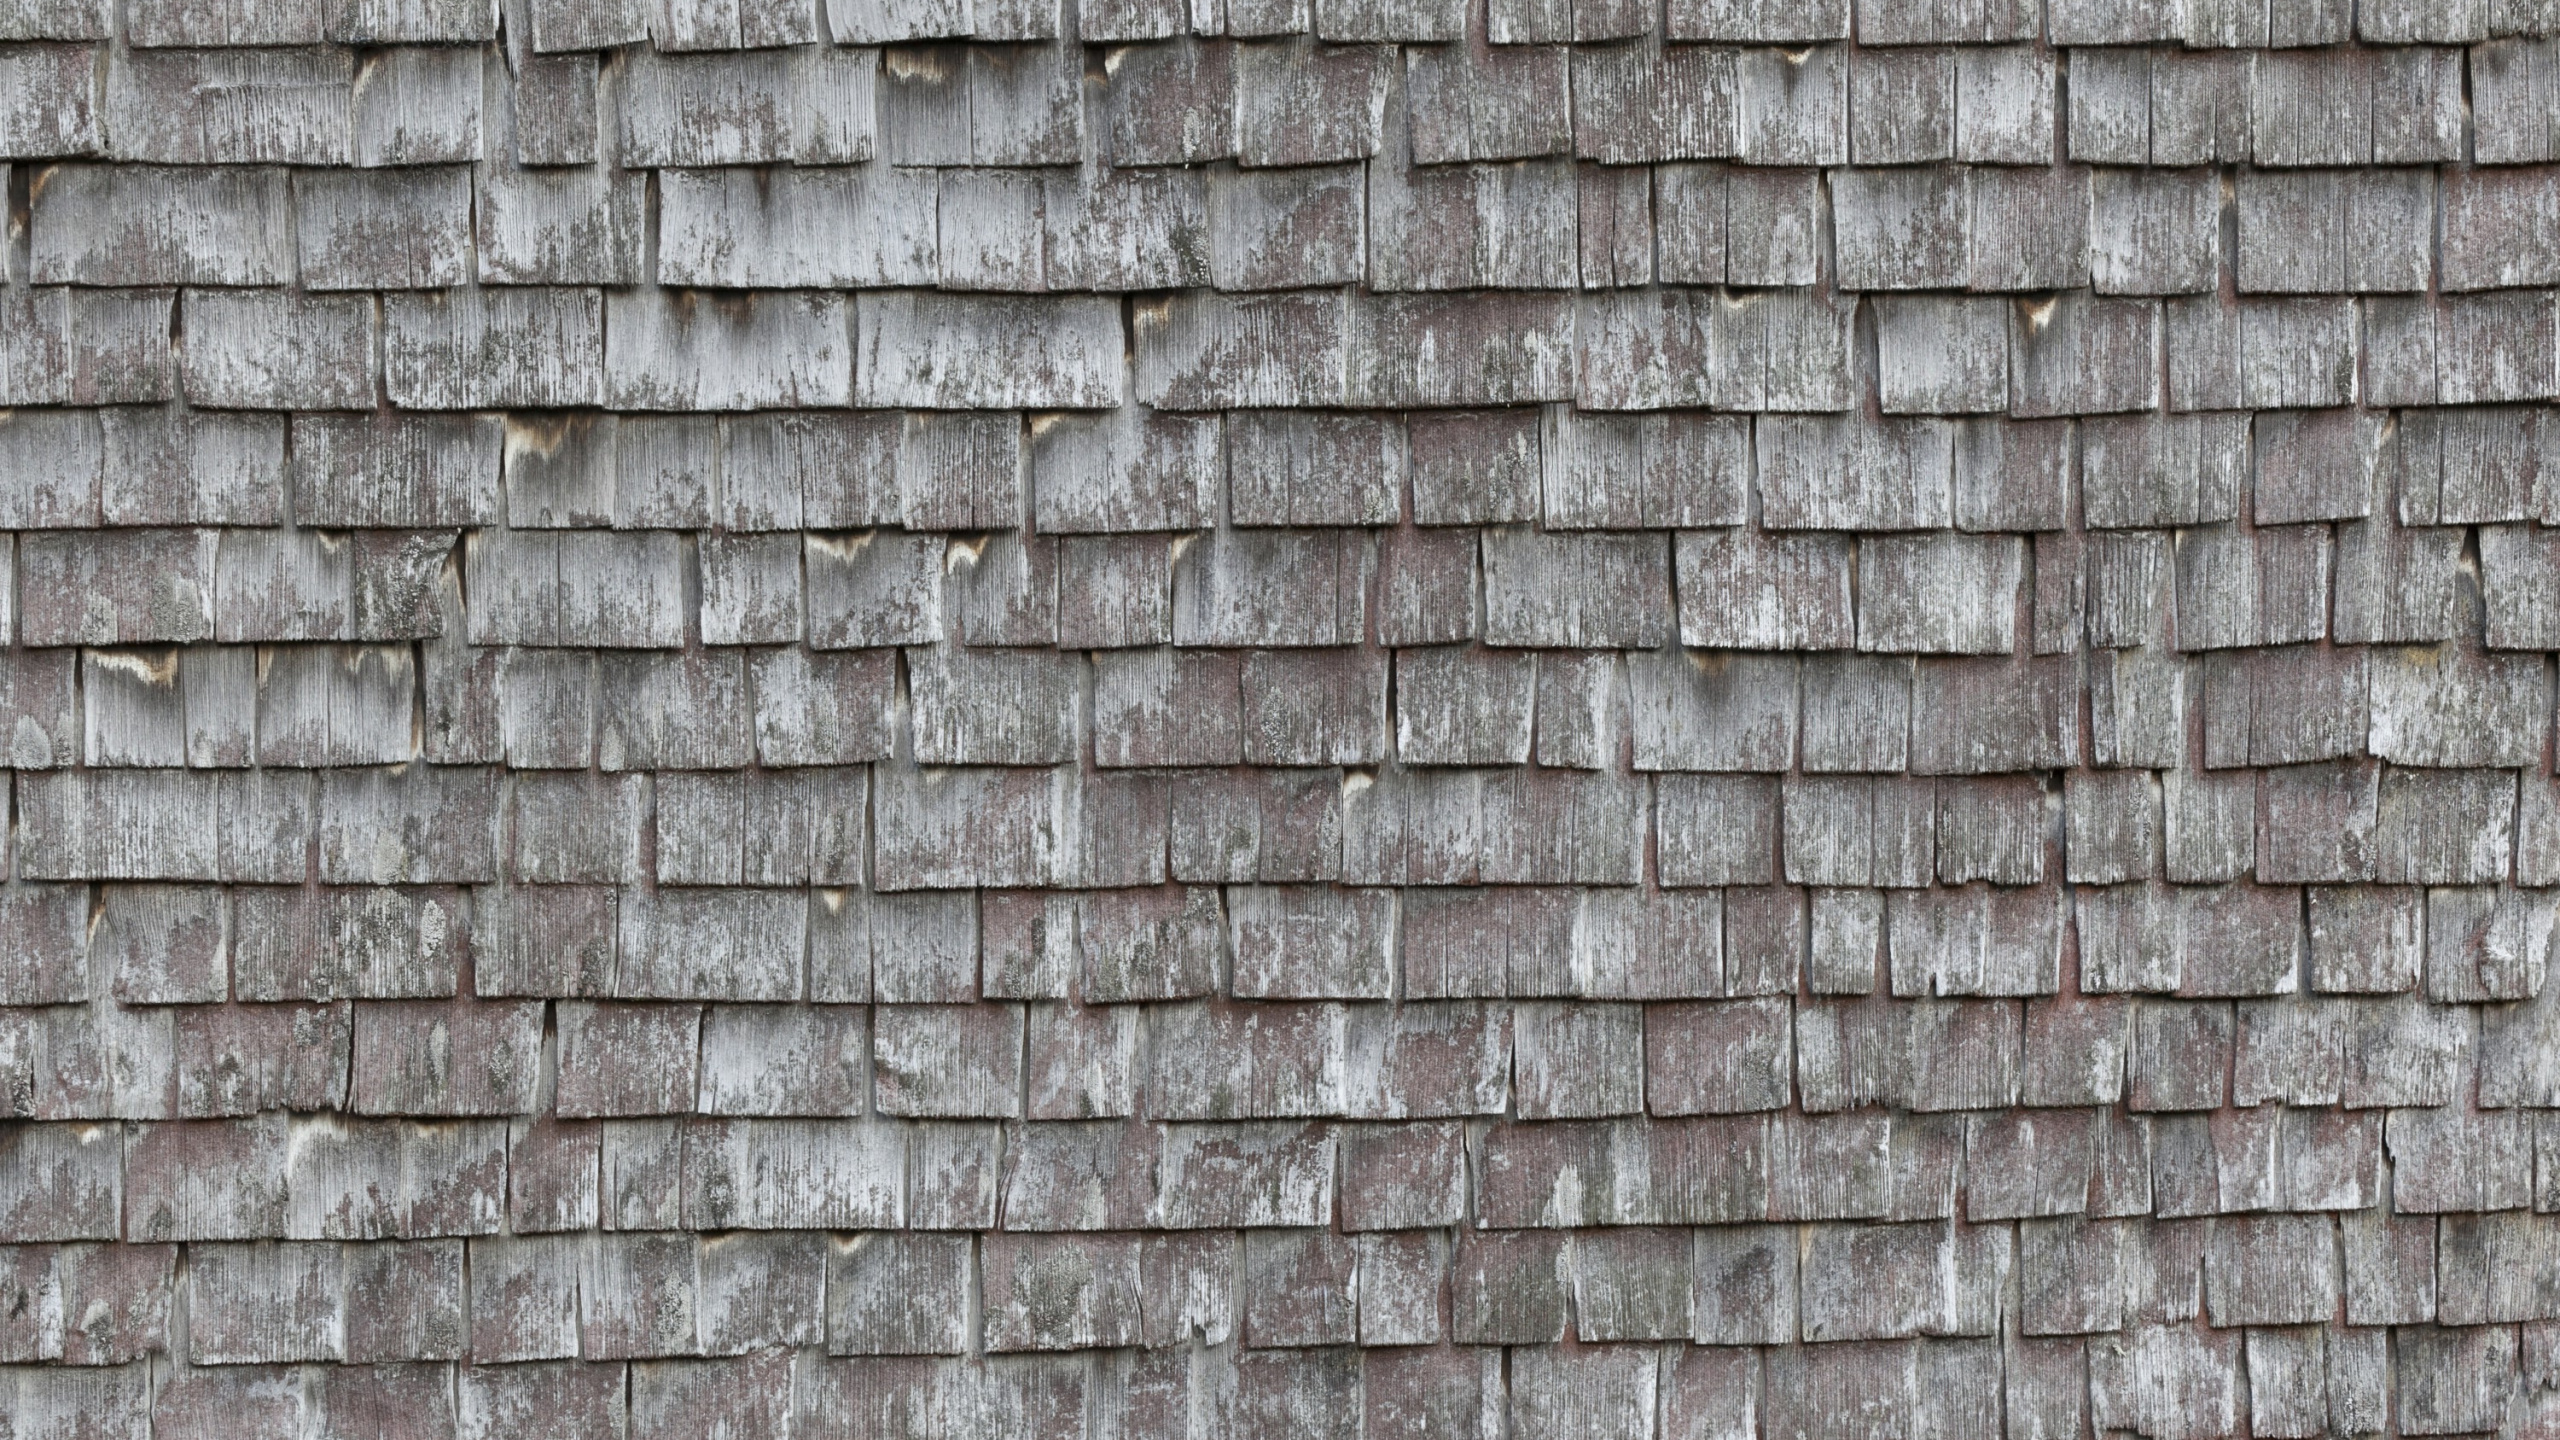 屋顶瓦片, 屋顶, 石壁, 木, 枪筒 壁纸 2560x1440 允许